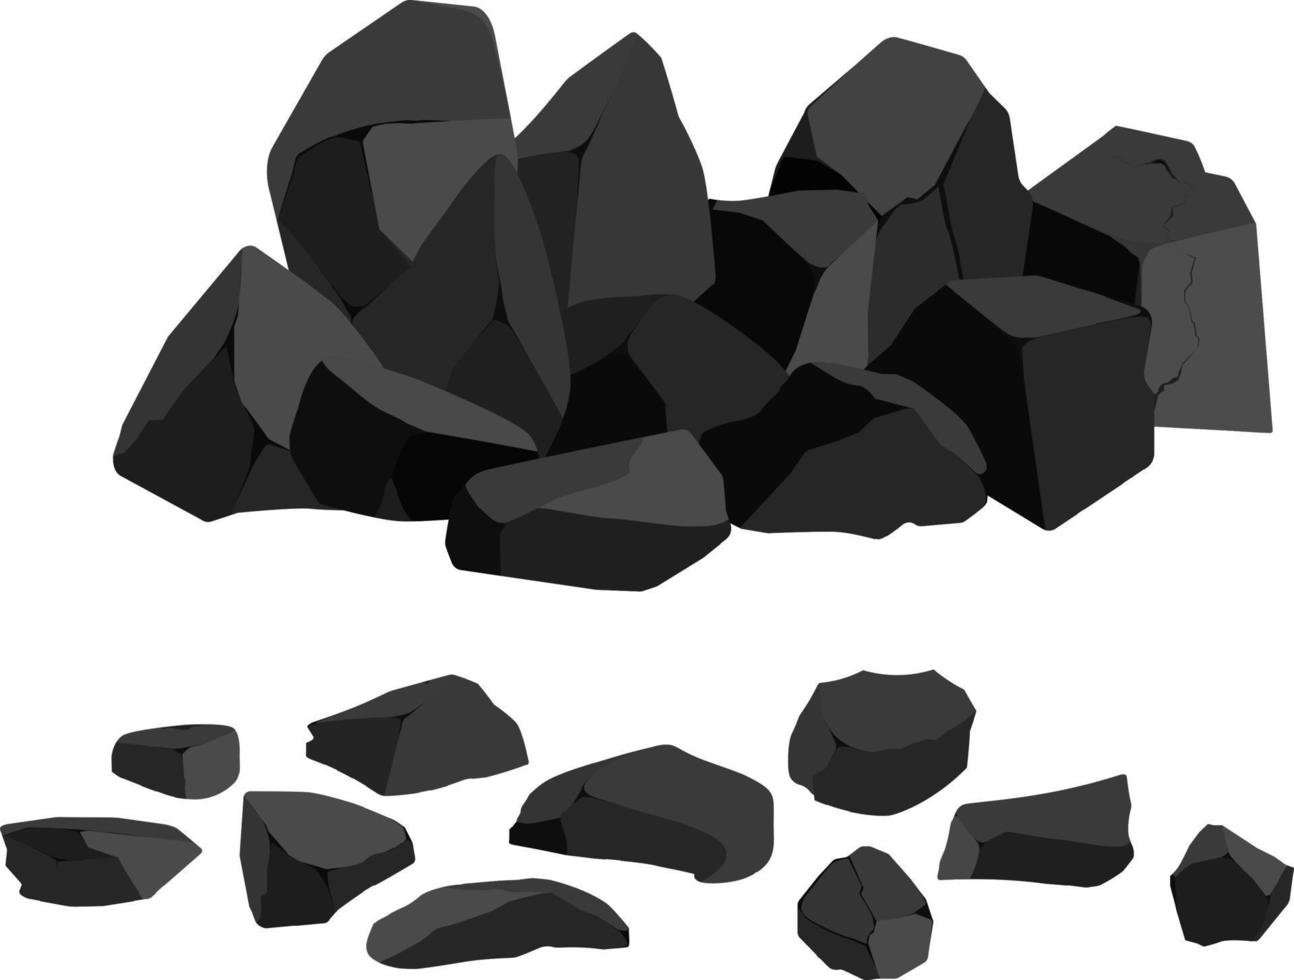 un ensemble de charbon de bois noir de formes diverses.collection de morceaux de charbon, de graphite, de basalte et d'anthracite. le concept d'exploitation minière et de minerai dans une mine.fragments de roche, rochers et matériaux de construction. vecteur